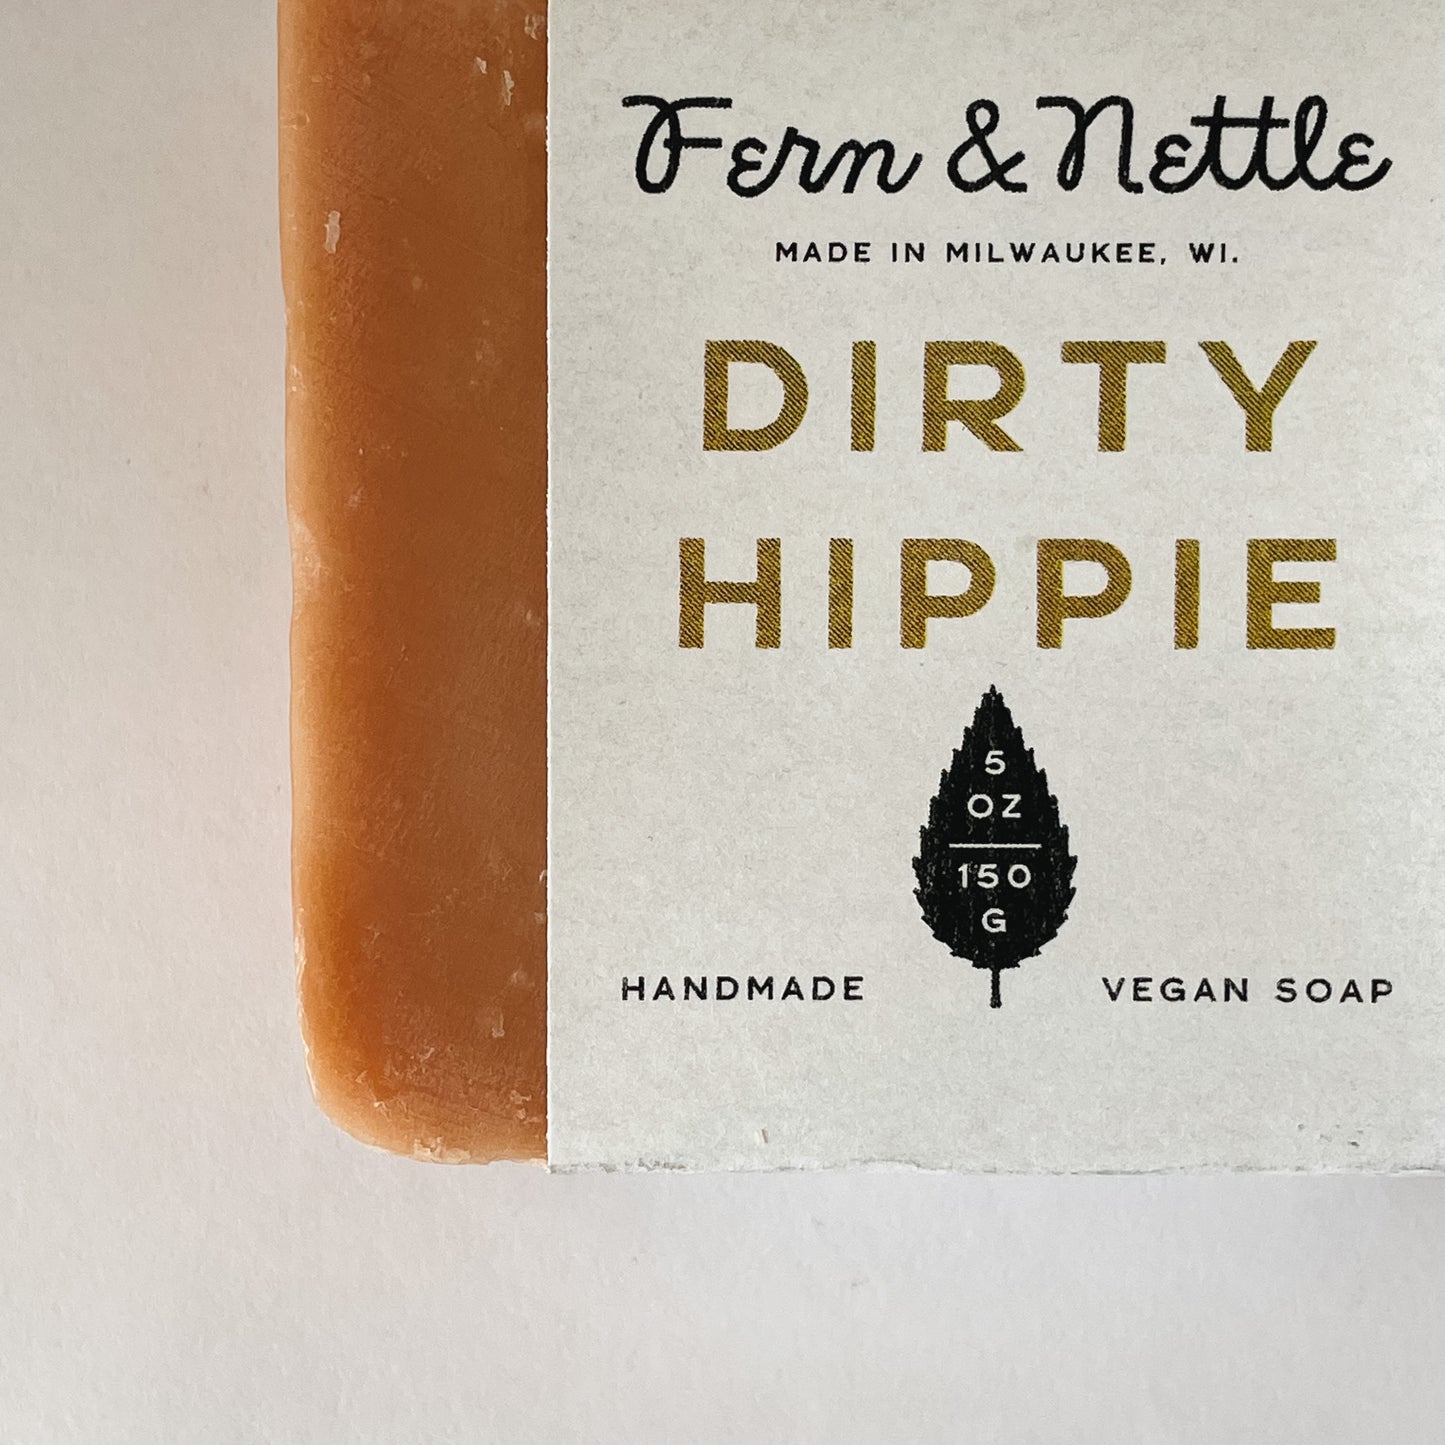 Fern & Nettle Handmade Soap | Dirty Hippie